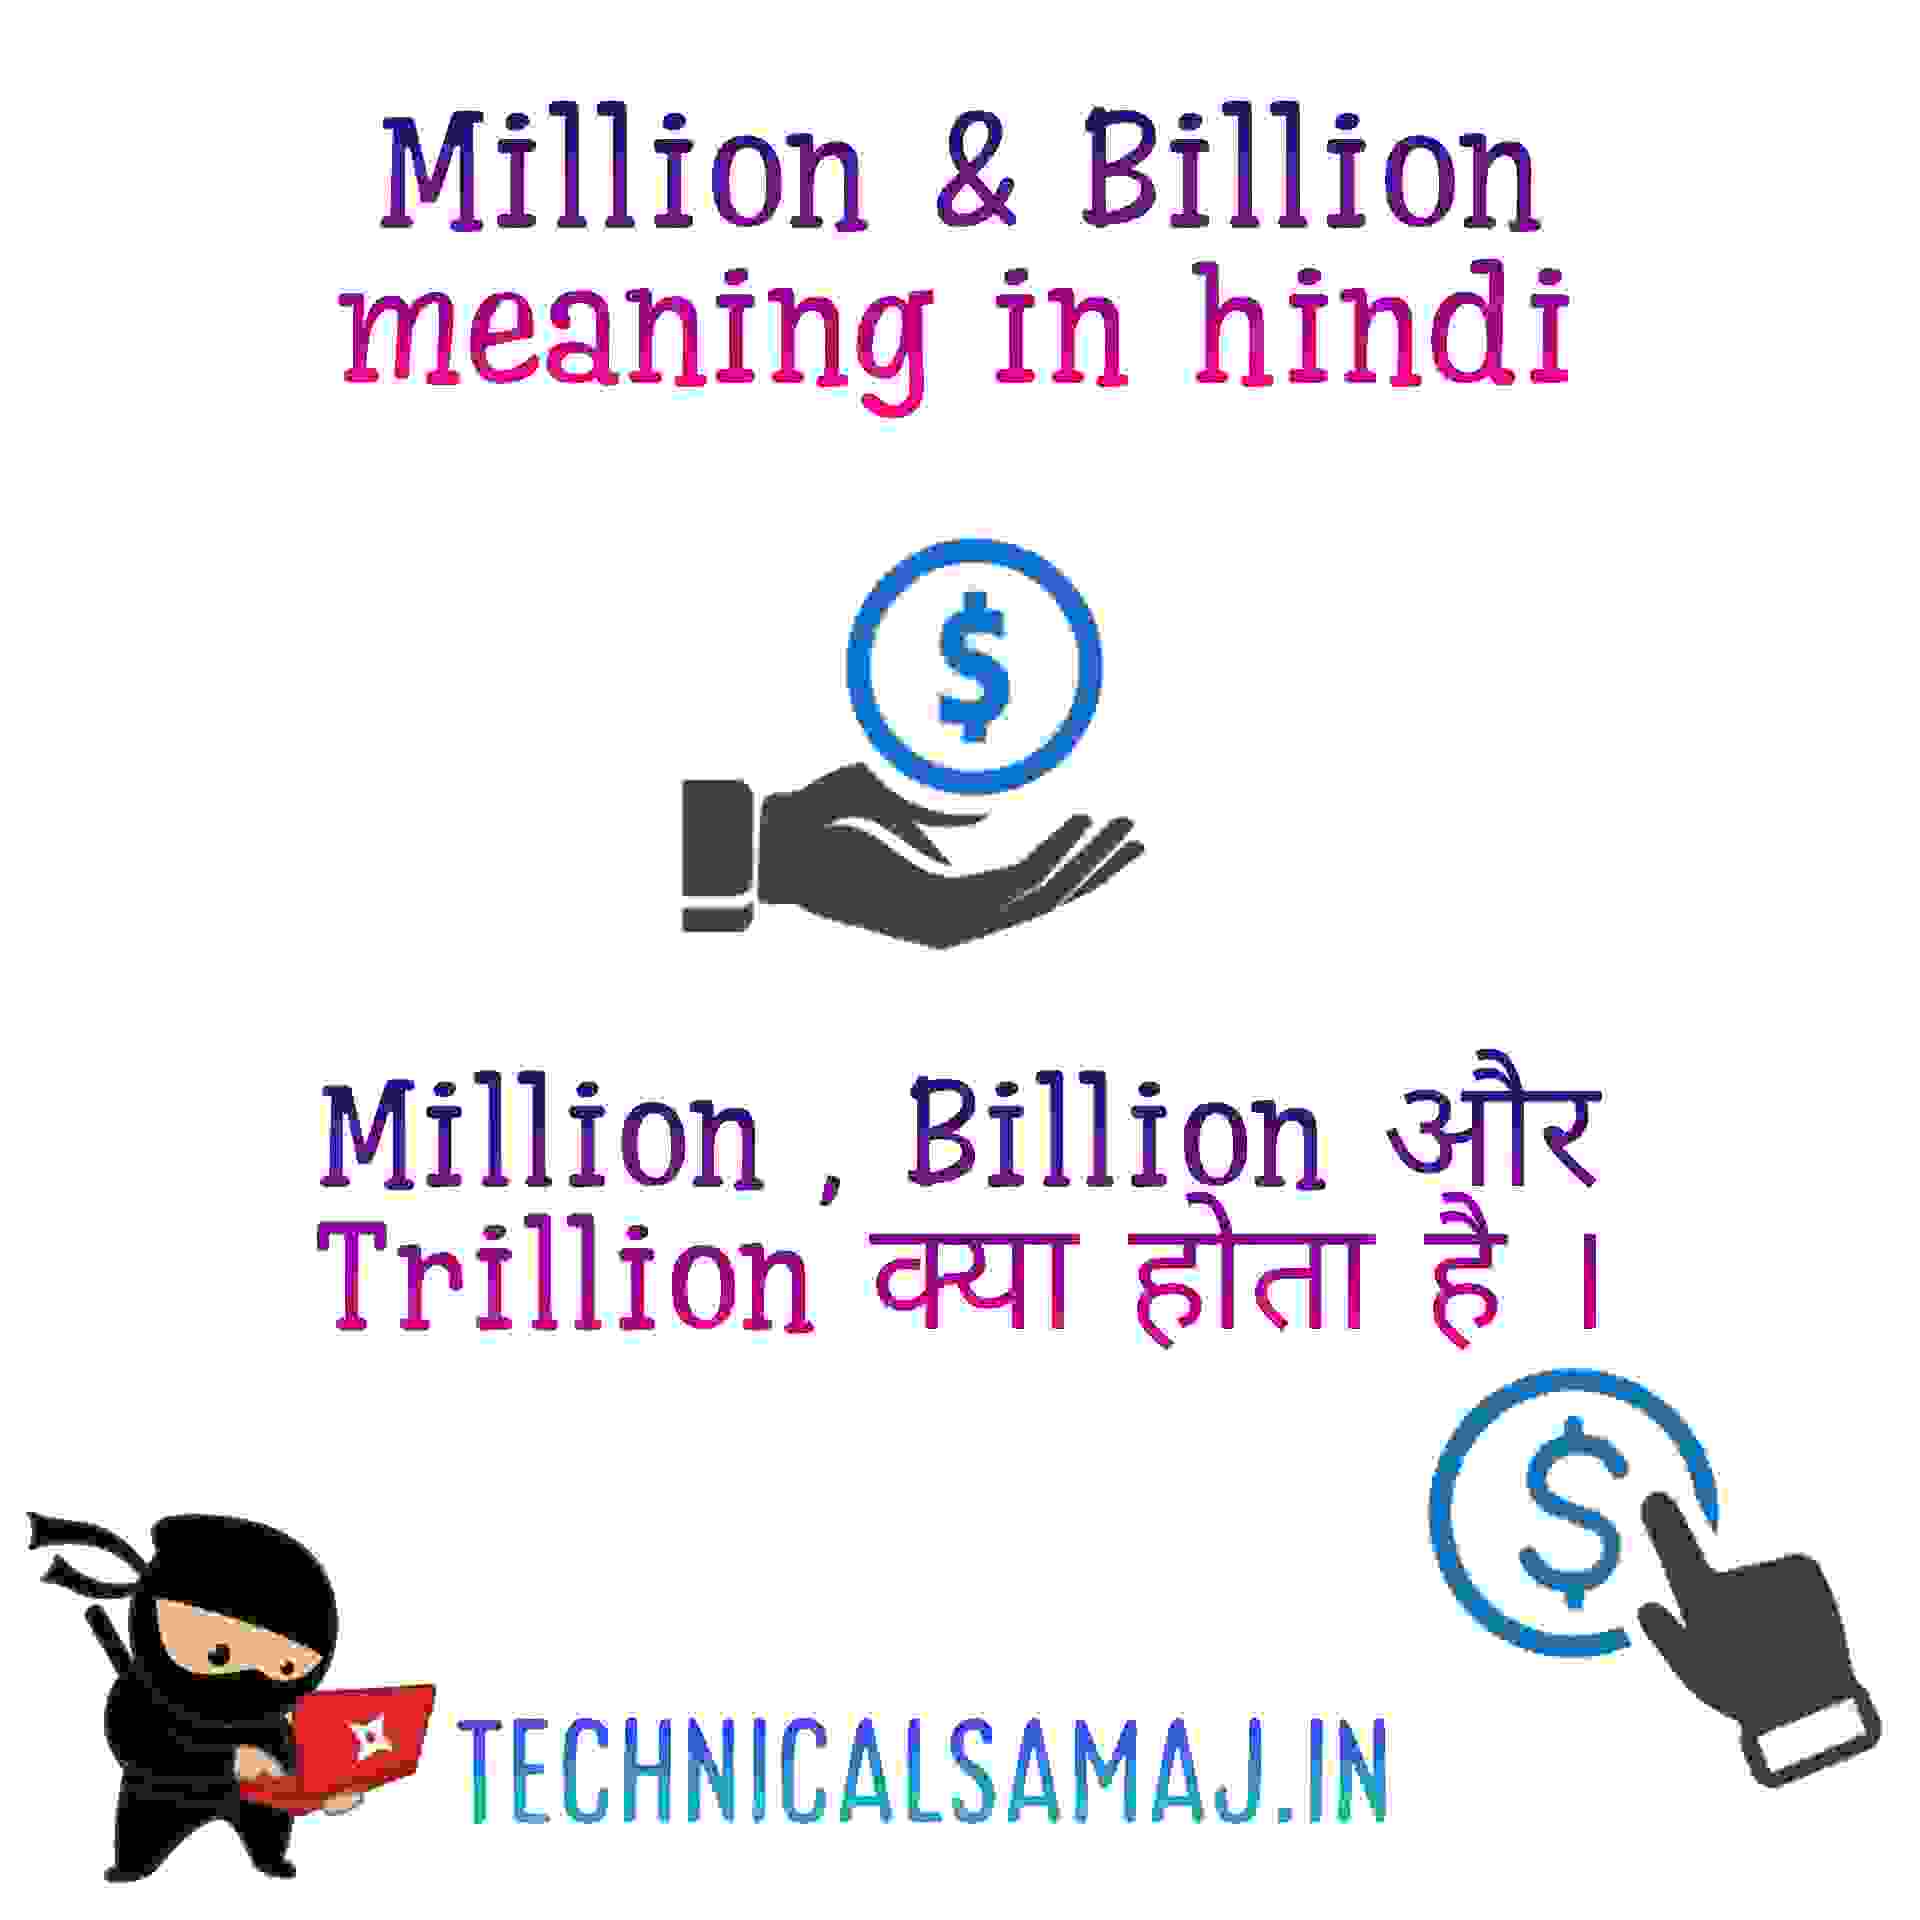 Million and Billion meaning in hindi,million in hindi,billion in hindi,trillion in hindi